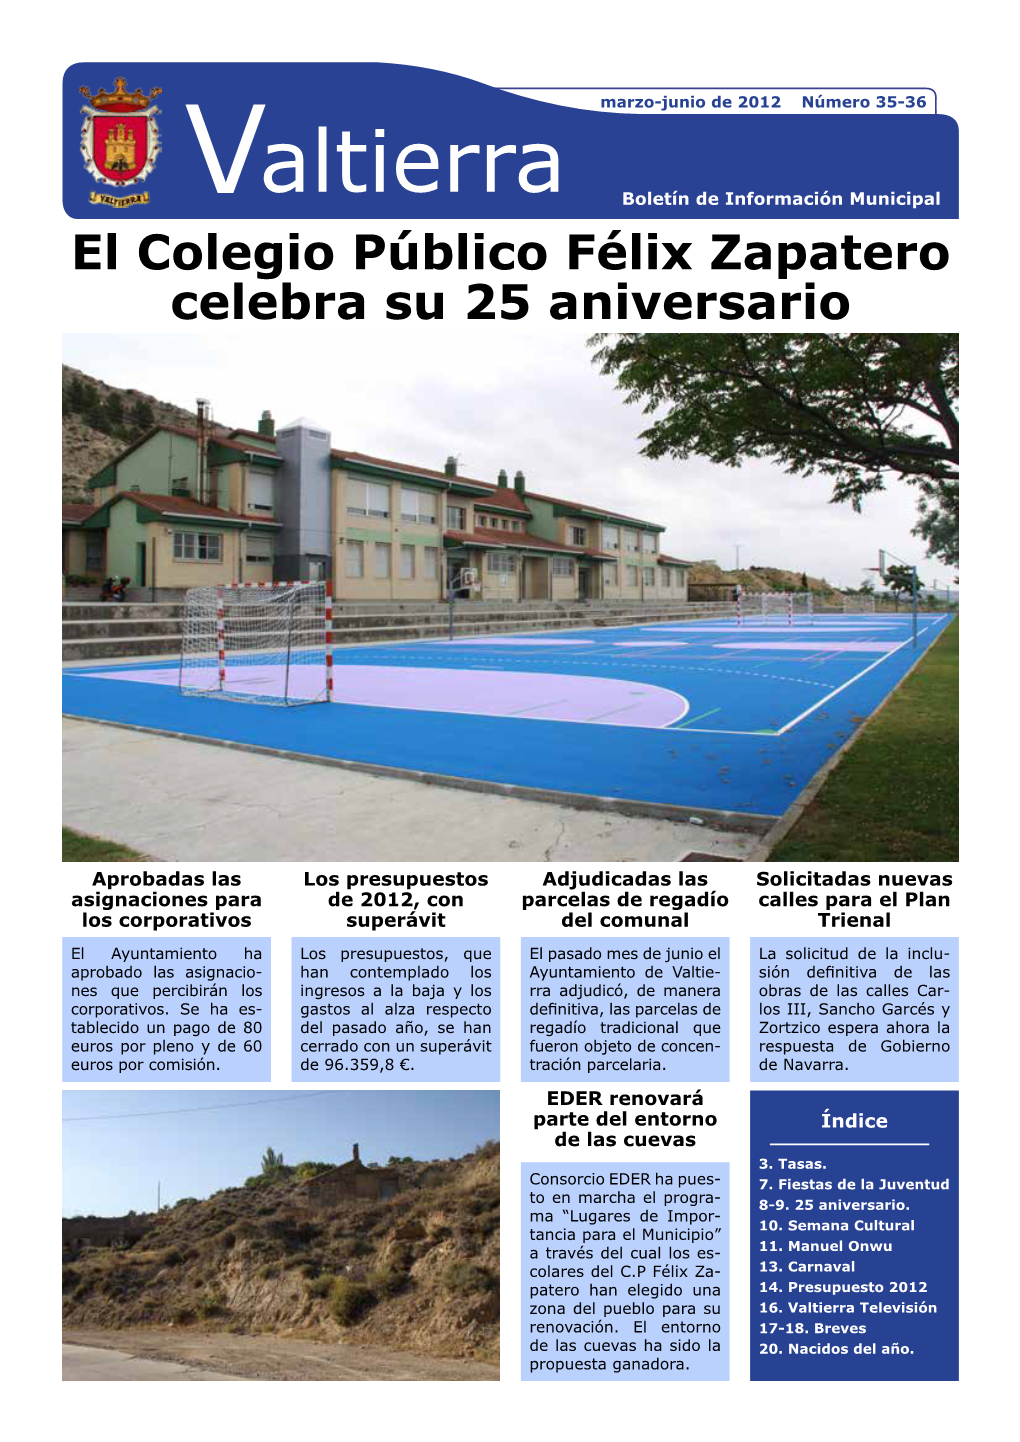 El Colegio Público Félix Zapatero Celebra Su 25 Aniversario